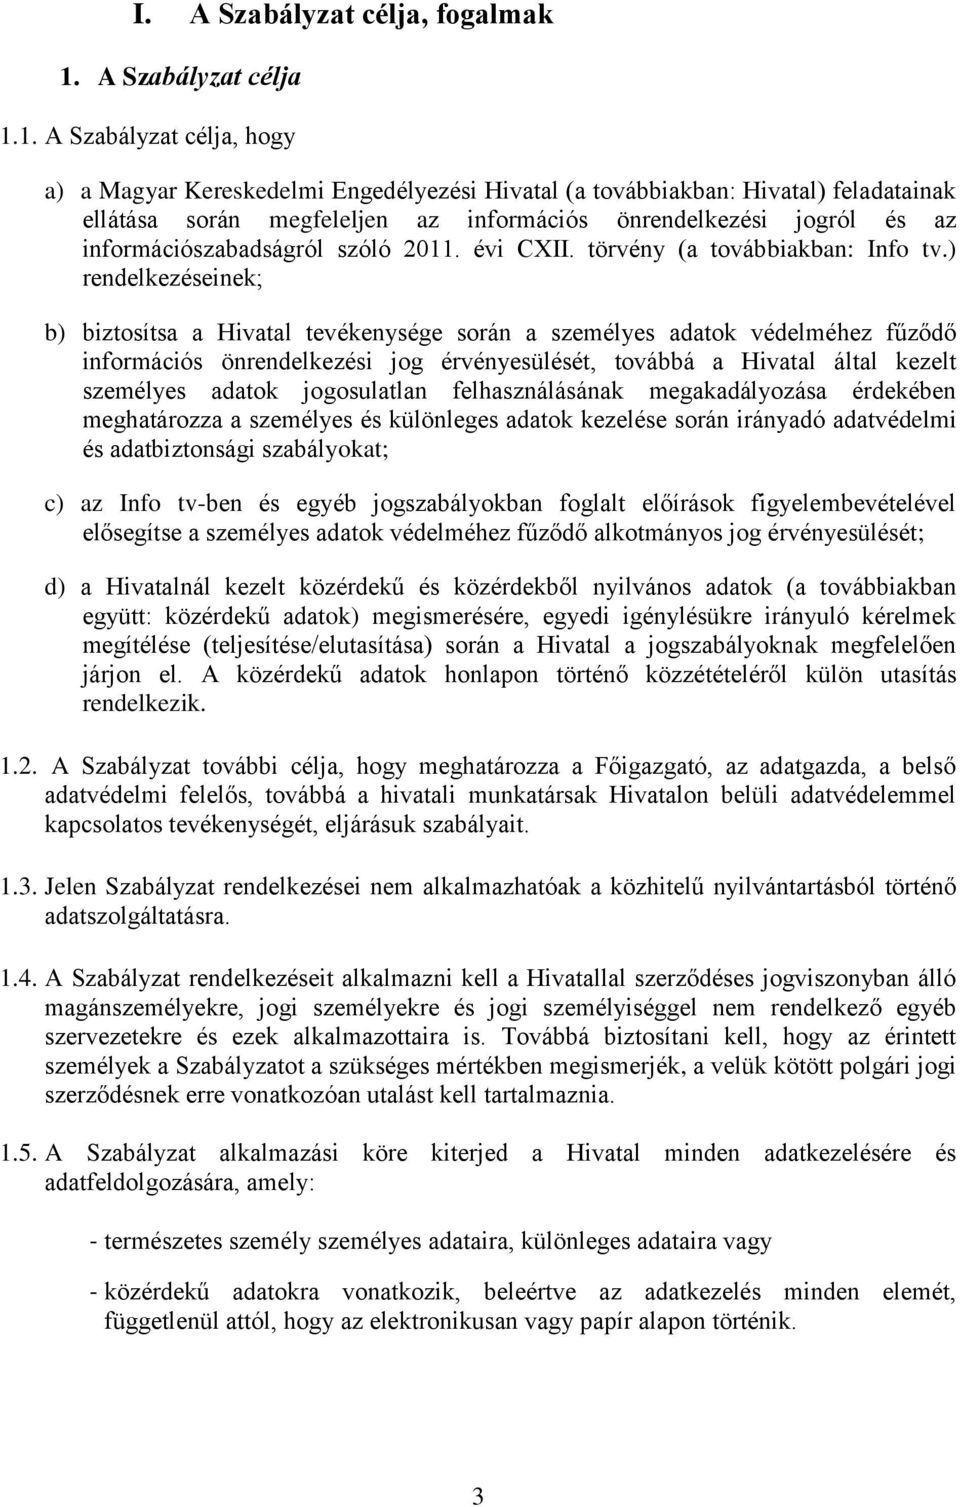 1. A Szabályzat célja, hogy a) a Magyar Kereskedelmi Engedélyezési Hivatal (a továbbiakban: Hivatal) feladatainak ellátása során megfeleljen az információs önrendelkezési jogról és az